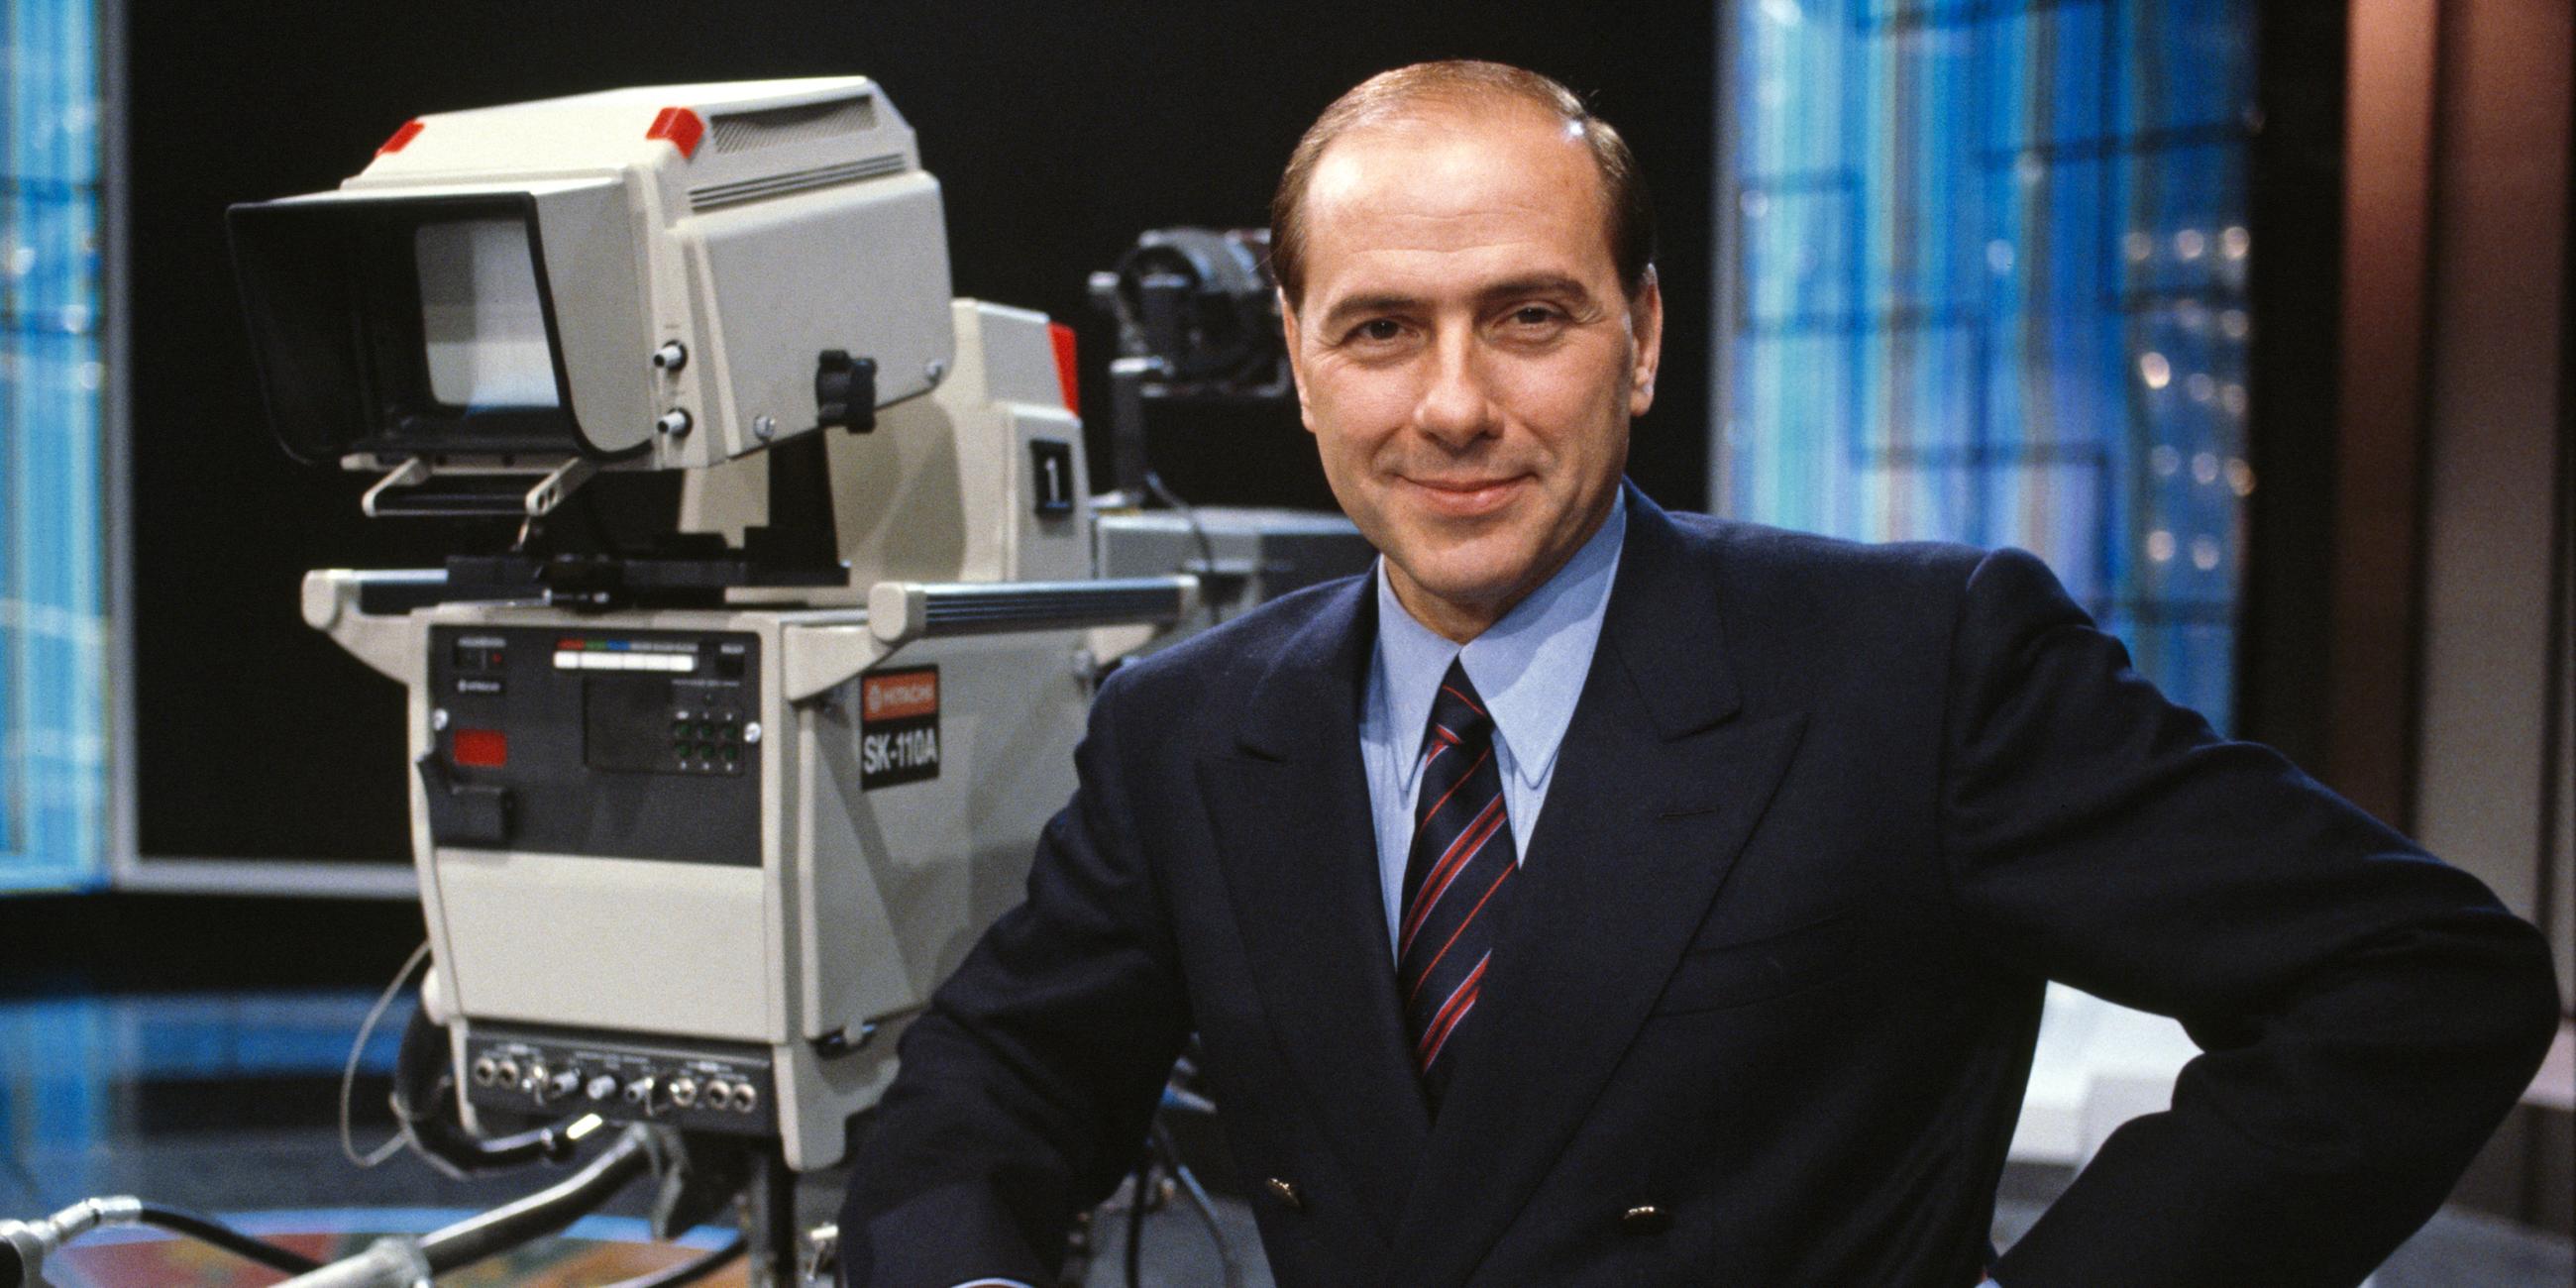 Silvio Berlusconi steht 1986 auf dem Set von Canale 5 in Mailand. Er blickt lächelnd in die Kamera.